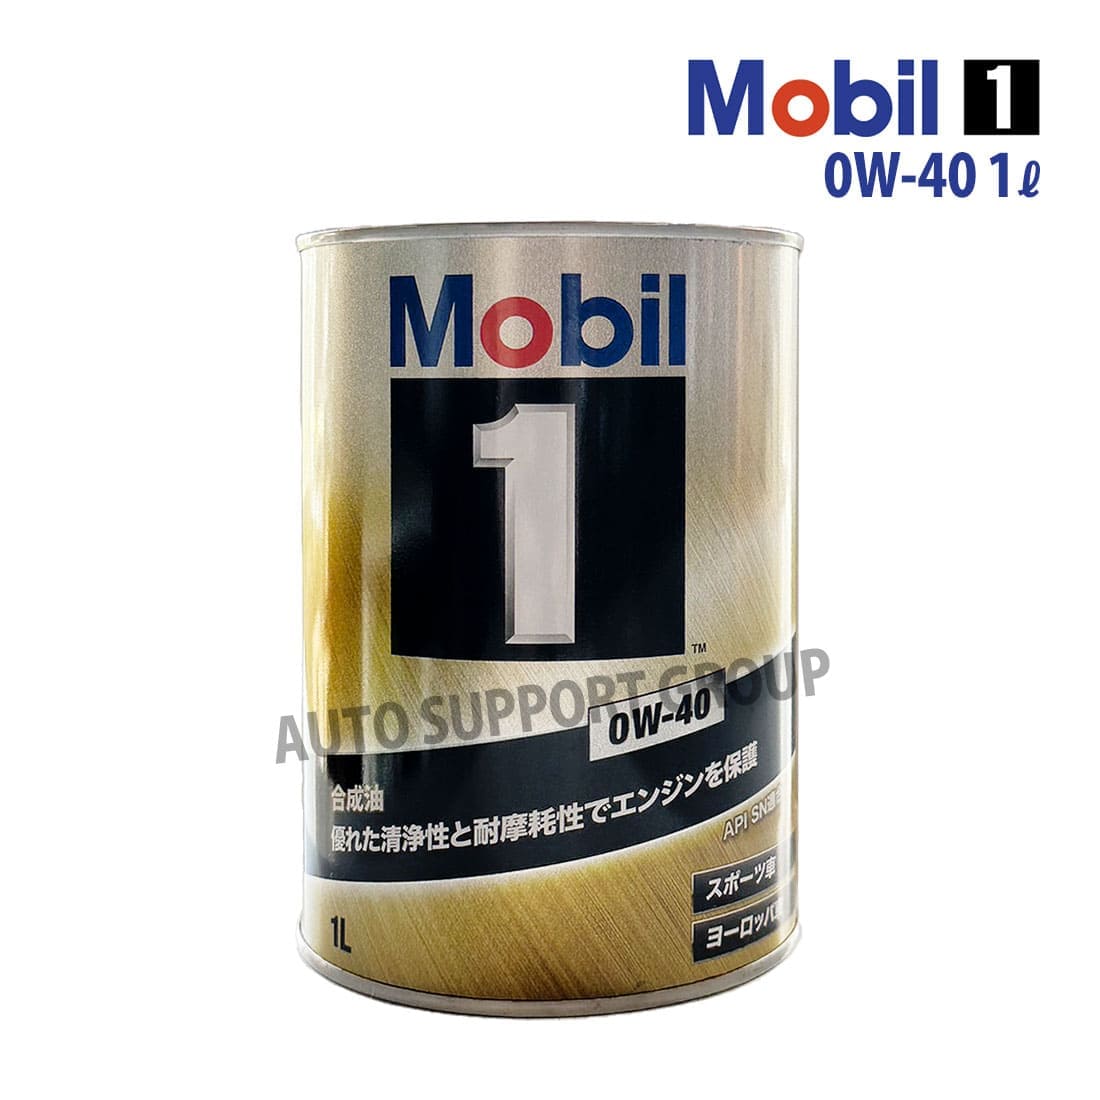 エンジンオイル 0W-40 SP モービル1 Mobil1 1L缶 (1リットル)